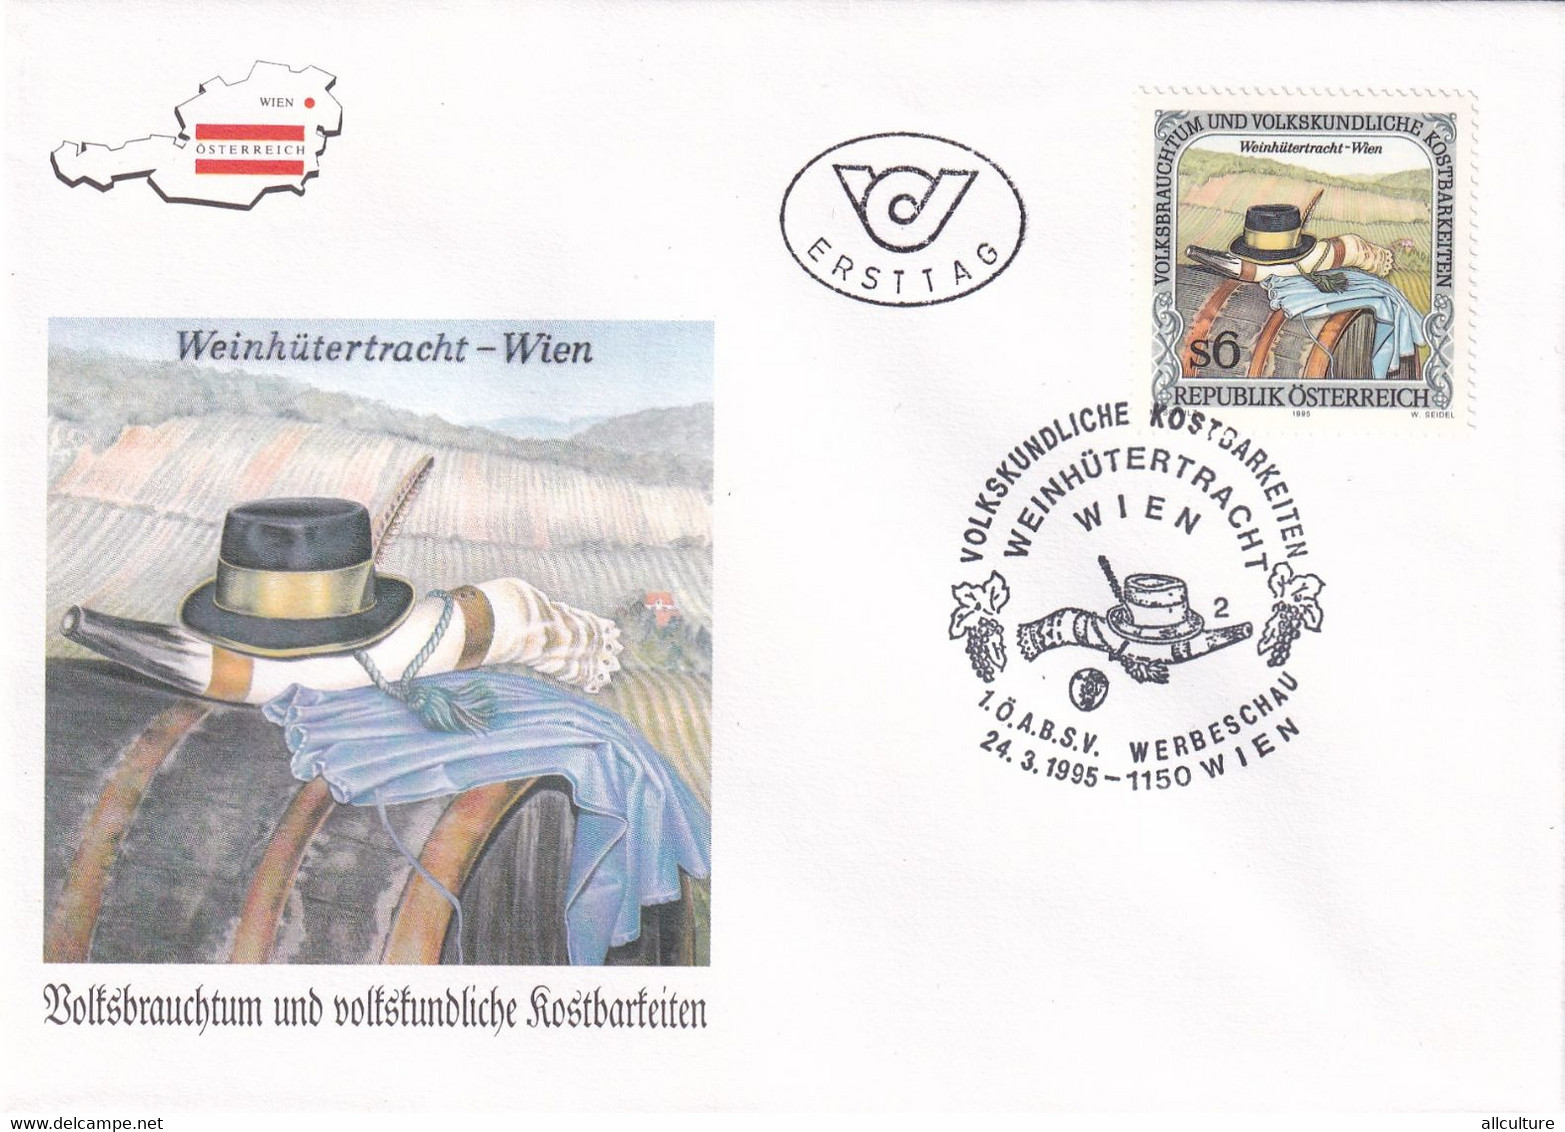 A8187 - WEINHUTERTRACHT, WEIN, ERSTTAG 1995  REPUBLIC OESTERREICH USED STAMP ON COVER AUSTRIA - Brieven En Documenten